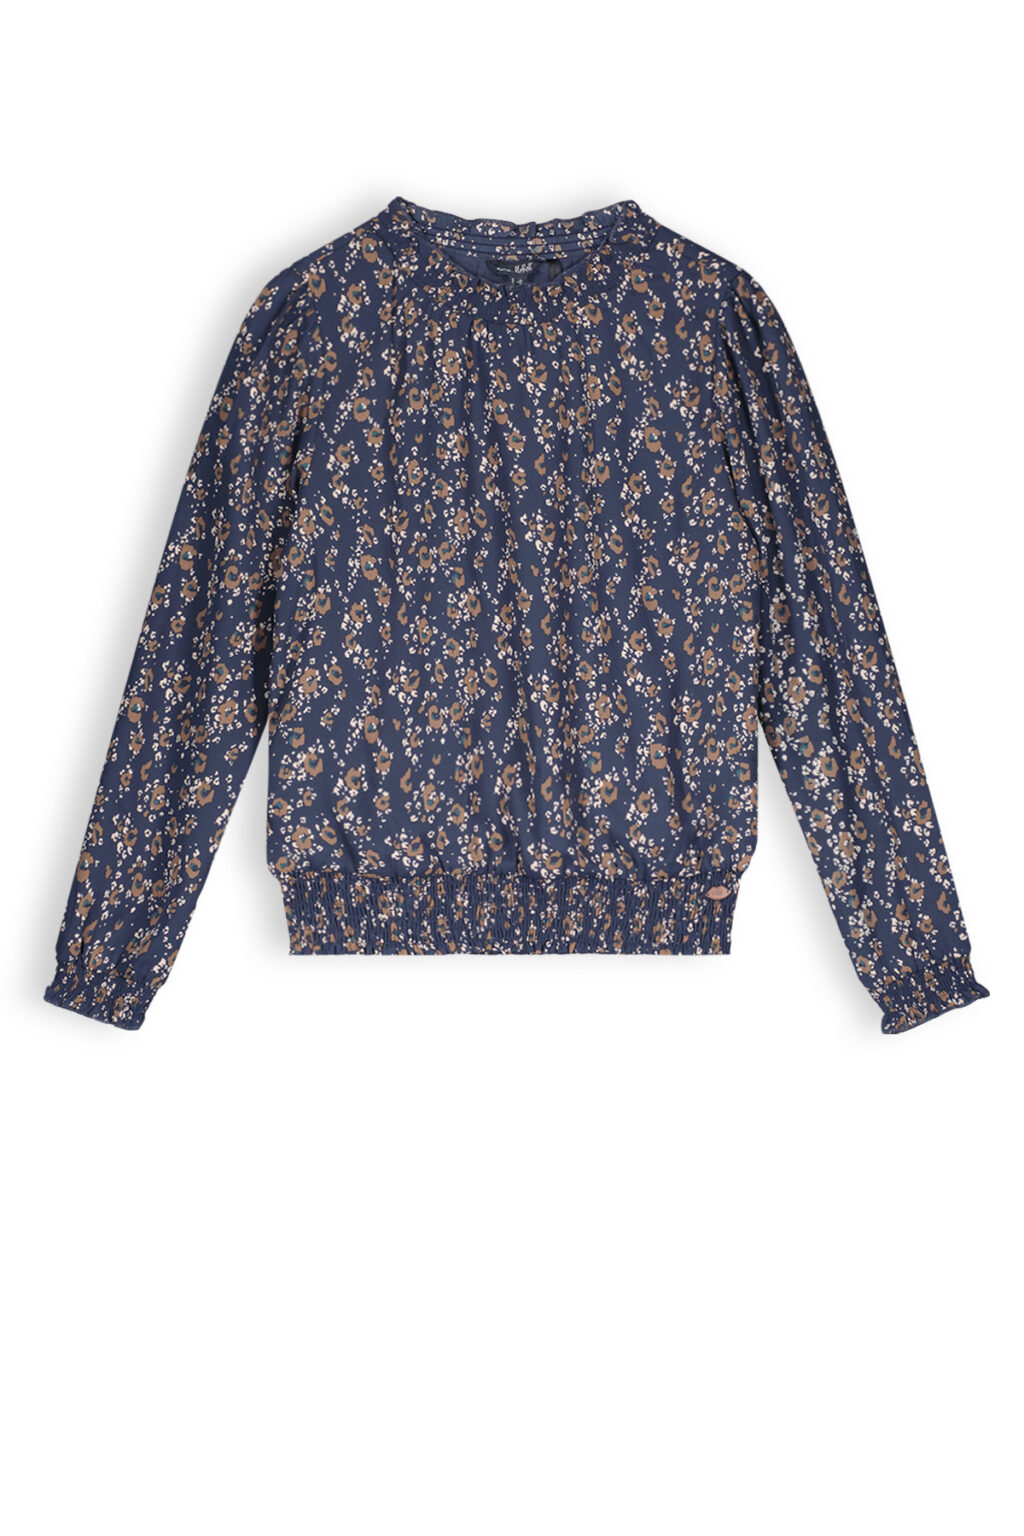 NoBell Meisjes blouse print - Tipi - Navy blauw ~ Spinze.nl